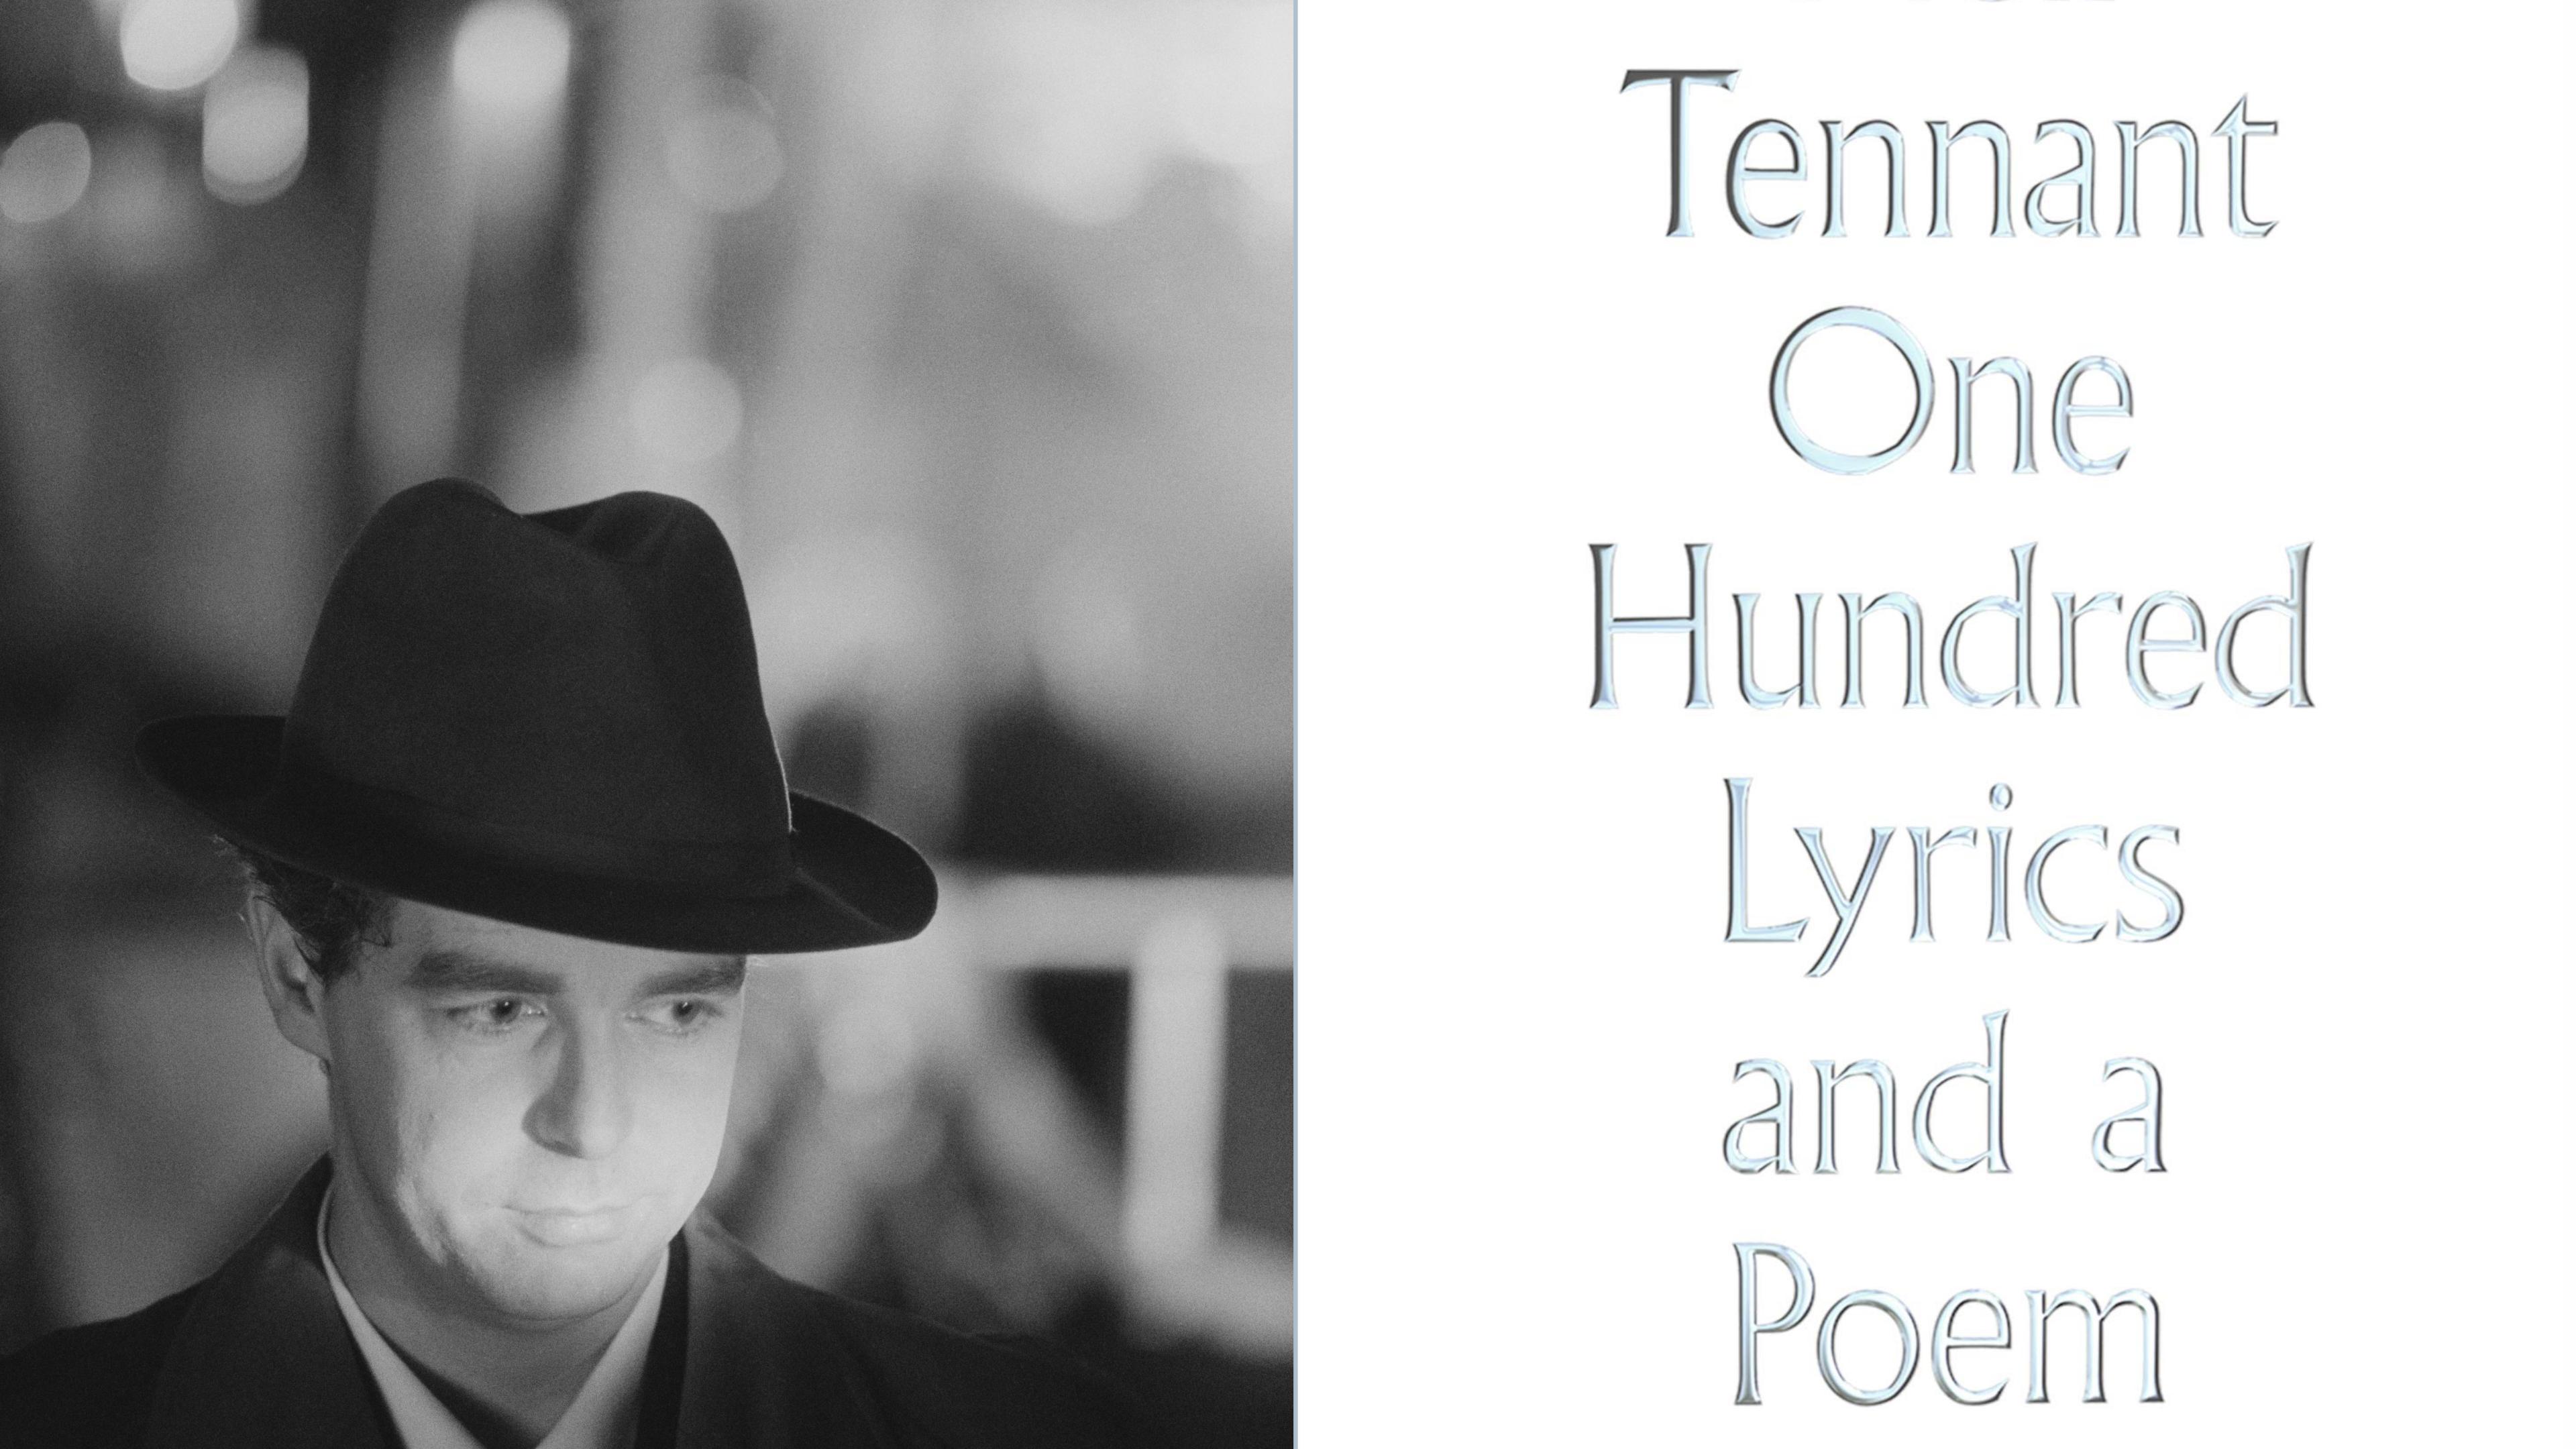 Neil Tennant hat seine schönsten Songtexte veröffentlicht